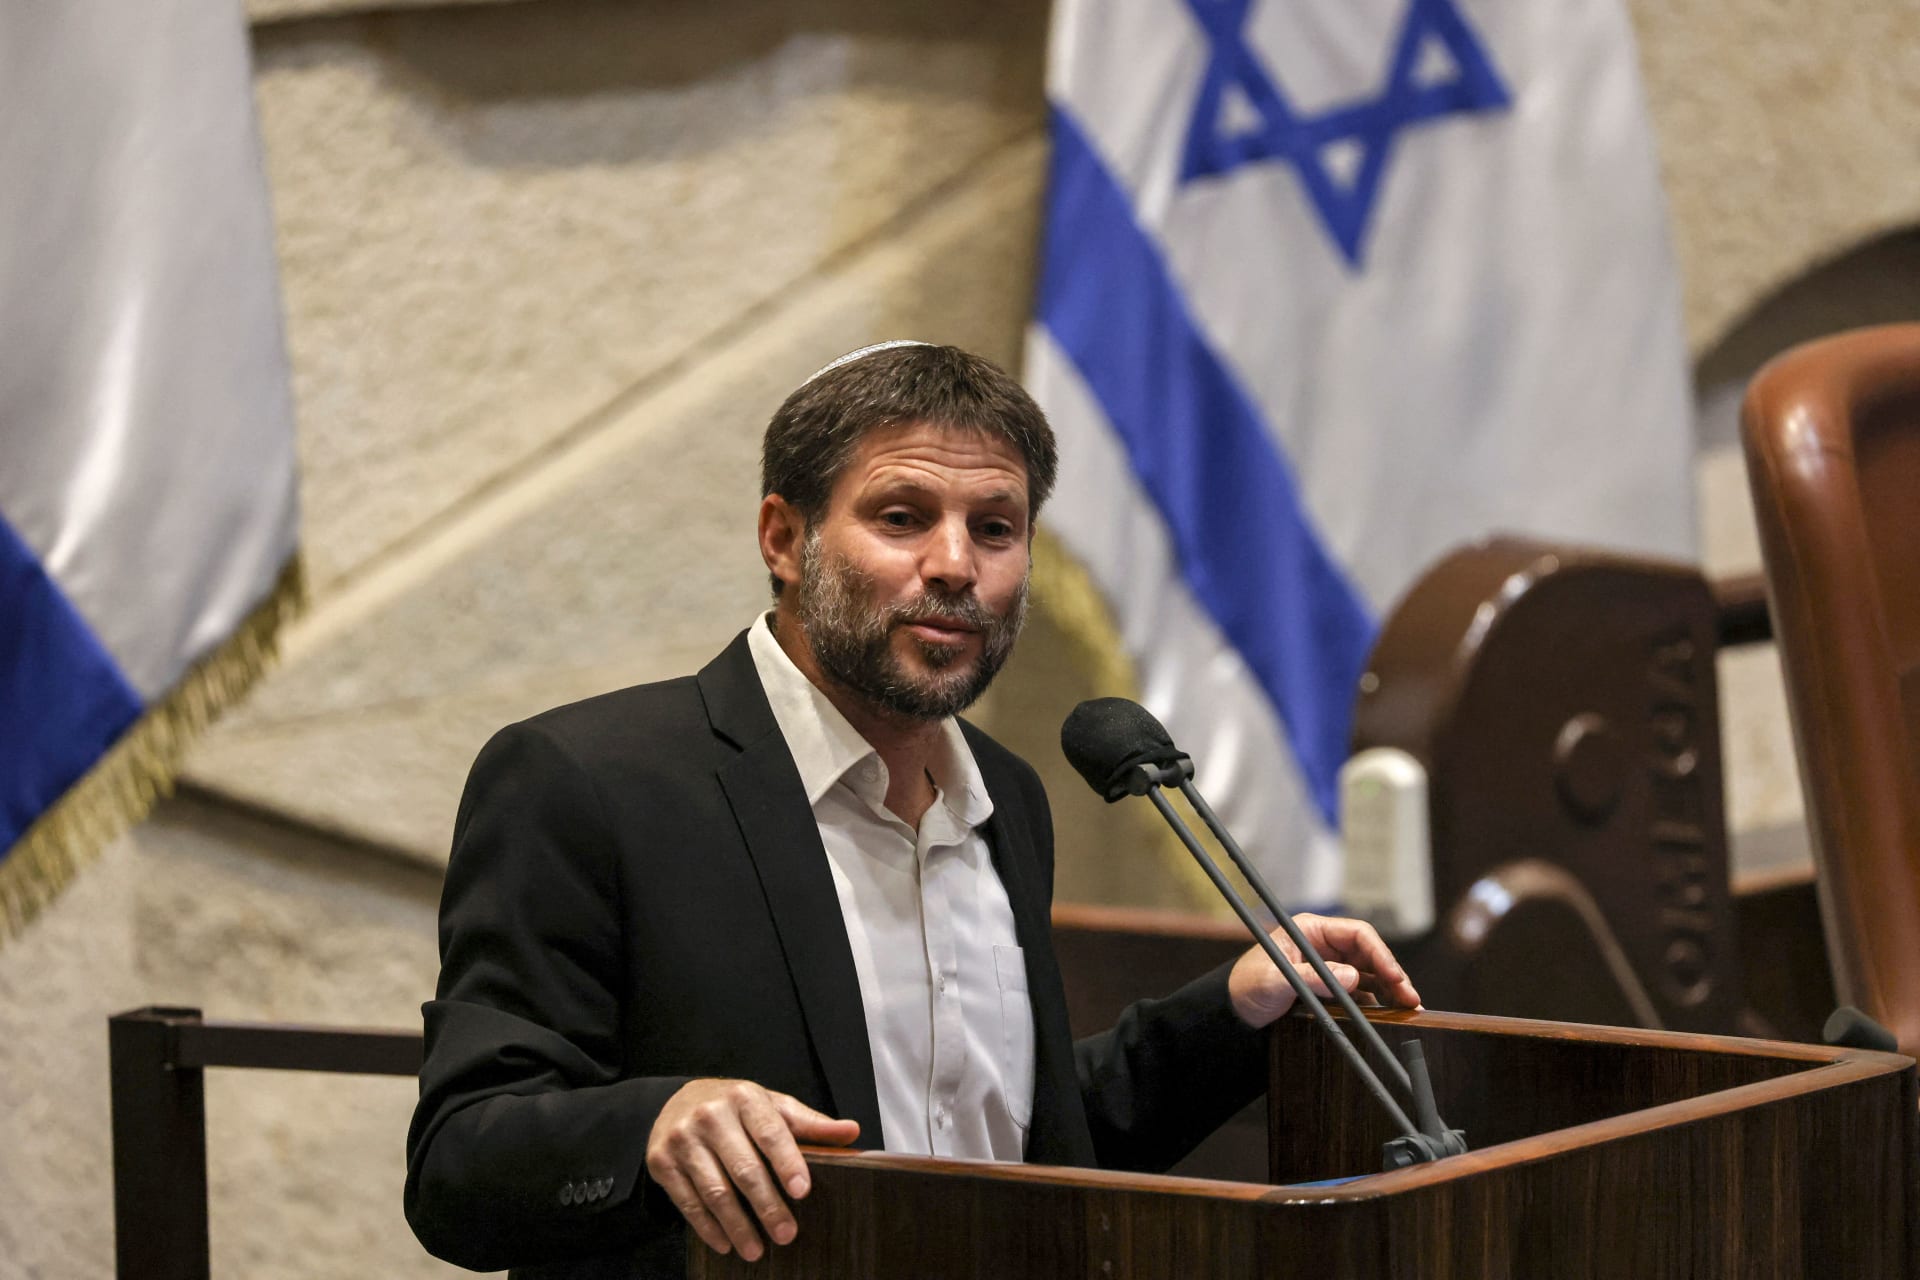 دول خليجية تعلن "إدانتها" لتصريح وزير إسرائيلي عن "محو" بلدة فلسطينية